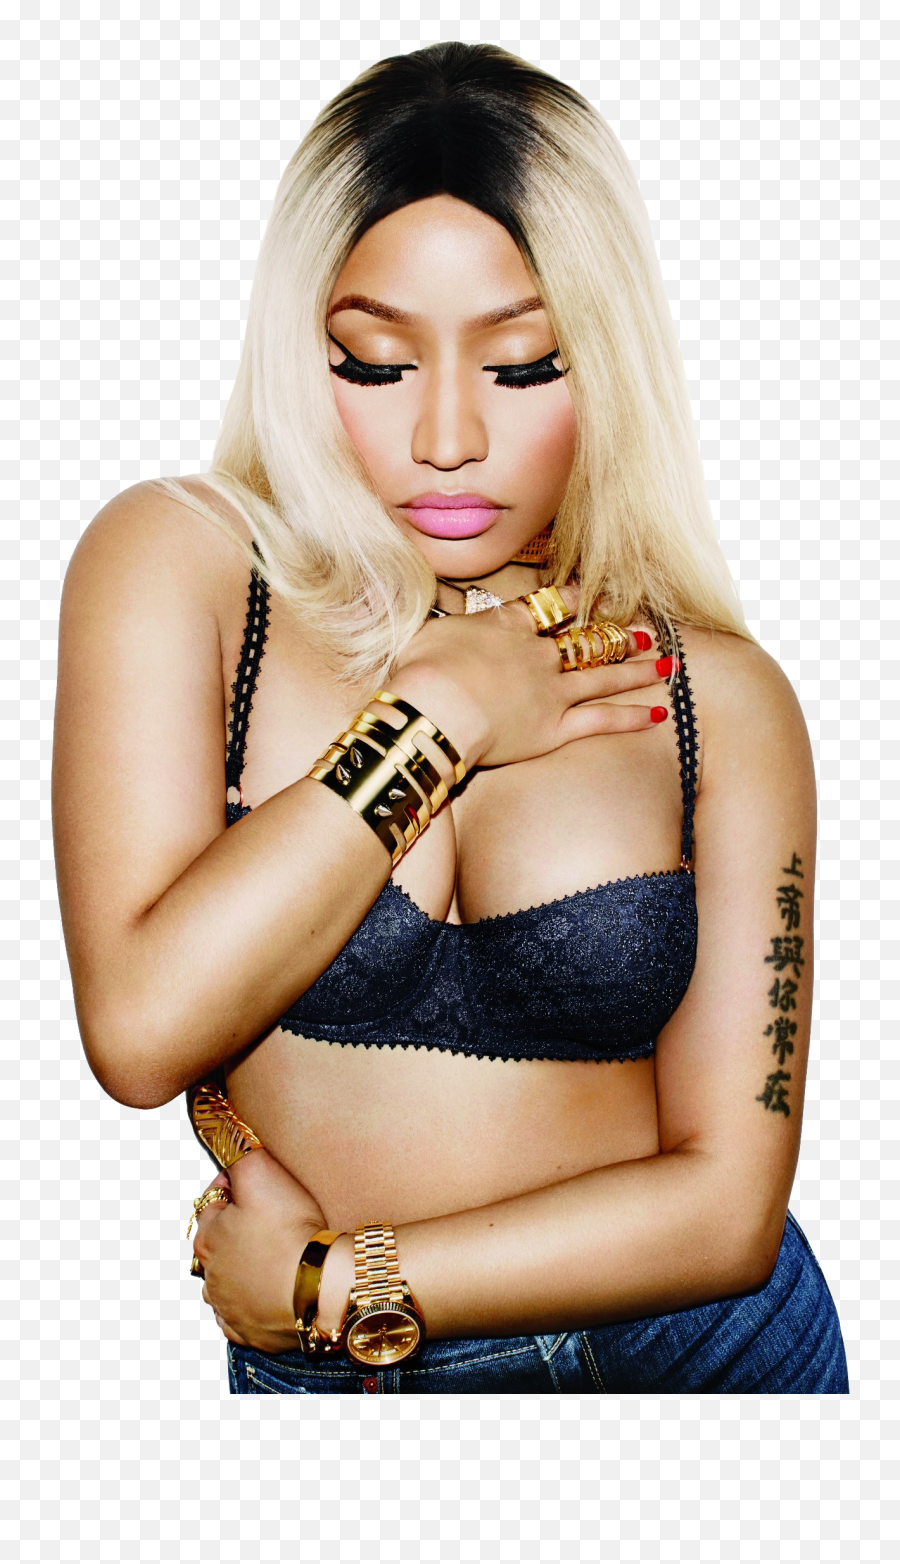 Nicki Minaj Png 9 Image - Nicki Minaj Ft Nas Sorry,Nicki Minaj Png